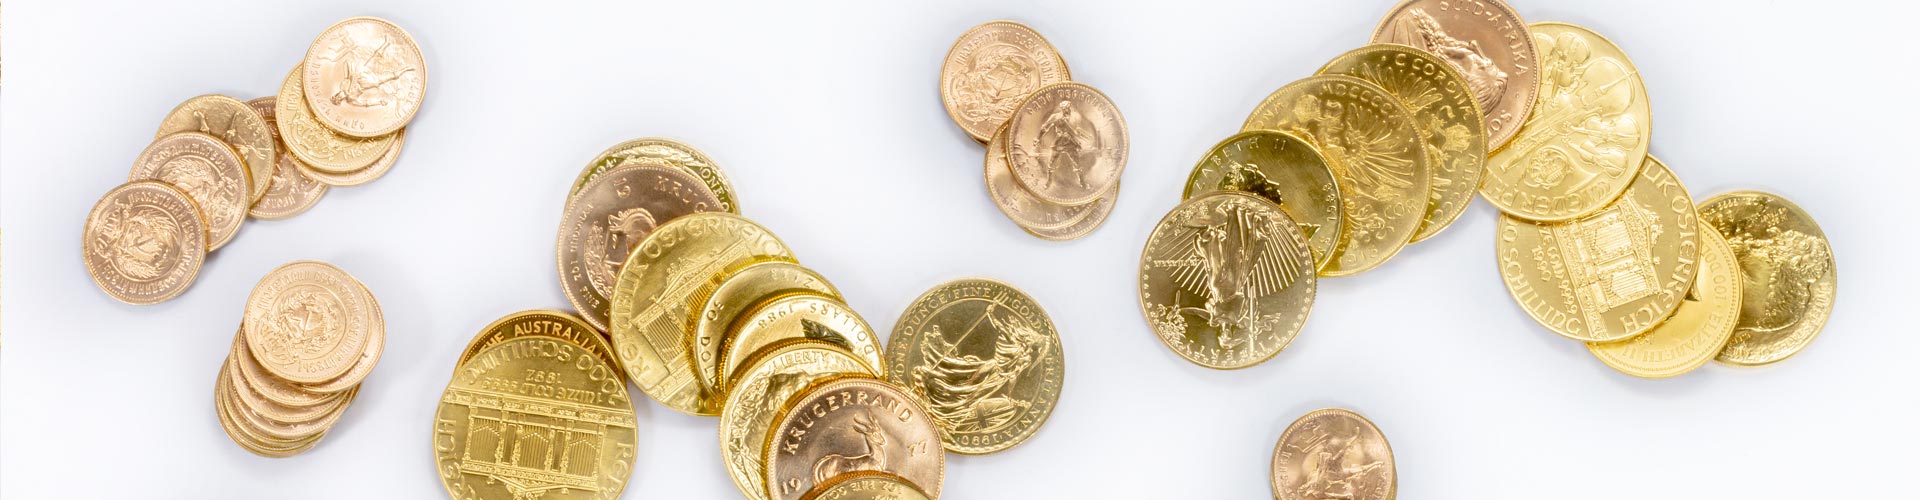 Verschiedene Goldmünzen und Goldanlagemünzen unter anderem Krügerrand und Maple Leaf